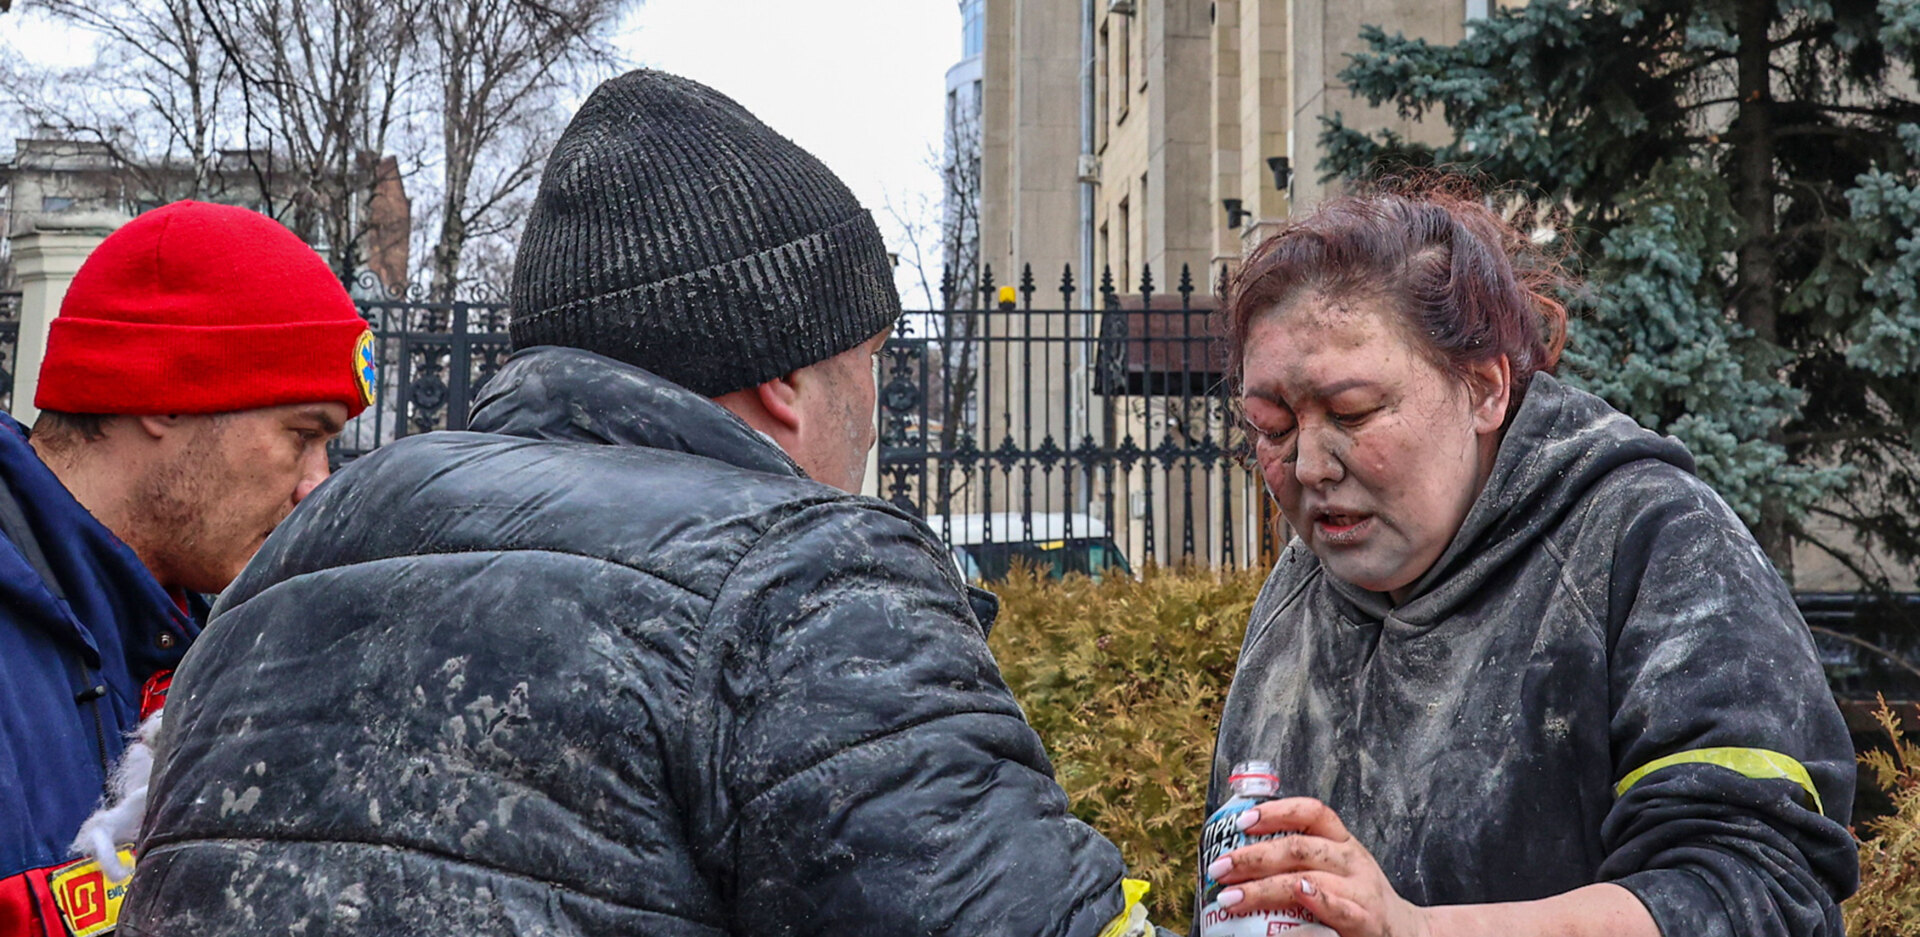 Διασώστες δίνουν λίγο νερό σε τραυματισμένη γυναίκα στο Χάρκοβο μετά τον βομβαρδισμό από τη Ρωσία (1 Μαρτίου)